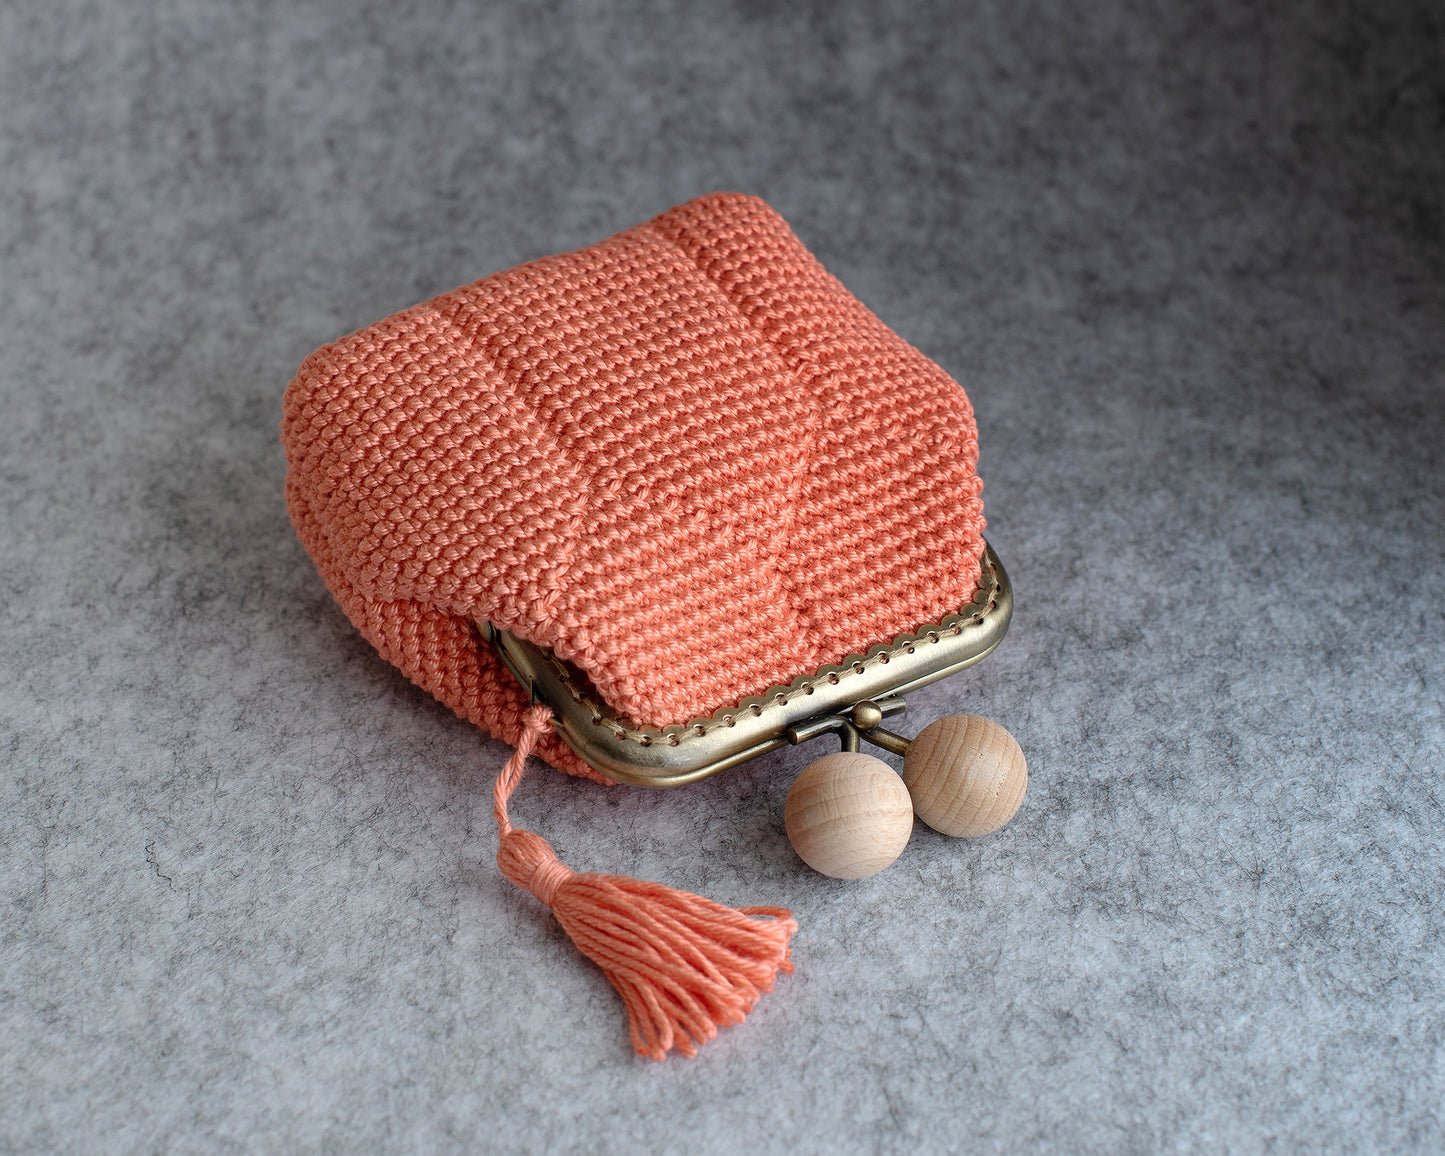 GEOMETRIC I design crochet purse pattern. Rectangular base, for 8.5cm frame